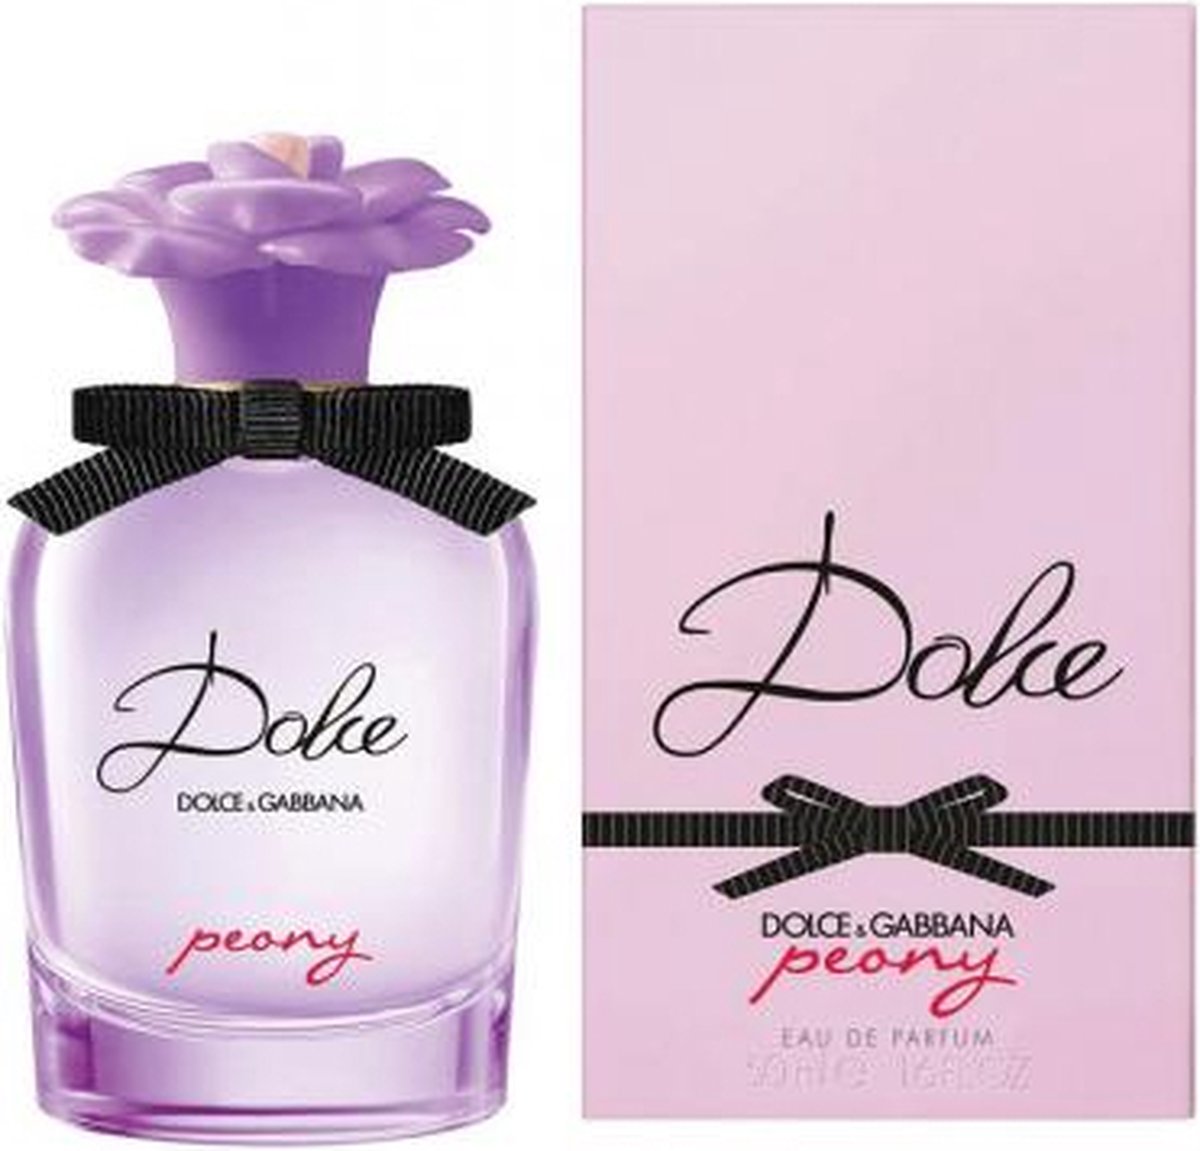 Dolce Peony by Dolce & Gabbana 50 ml - Eau De Parfum Spray